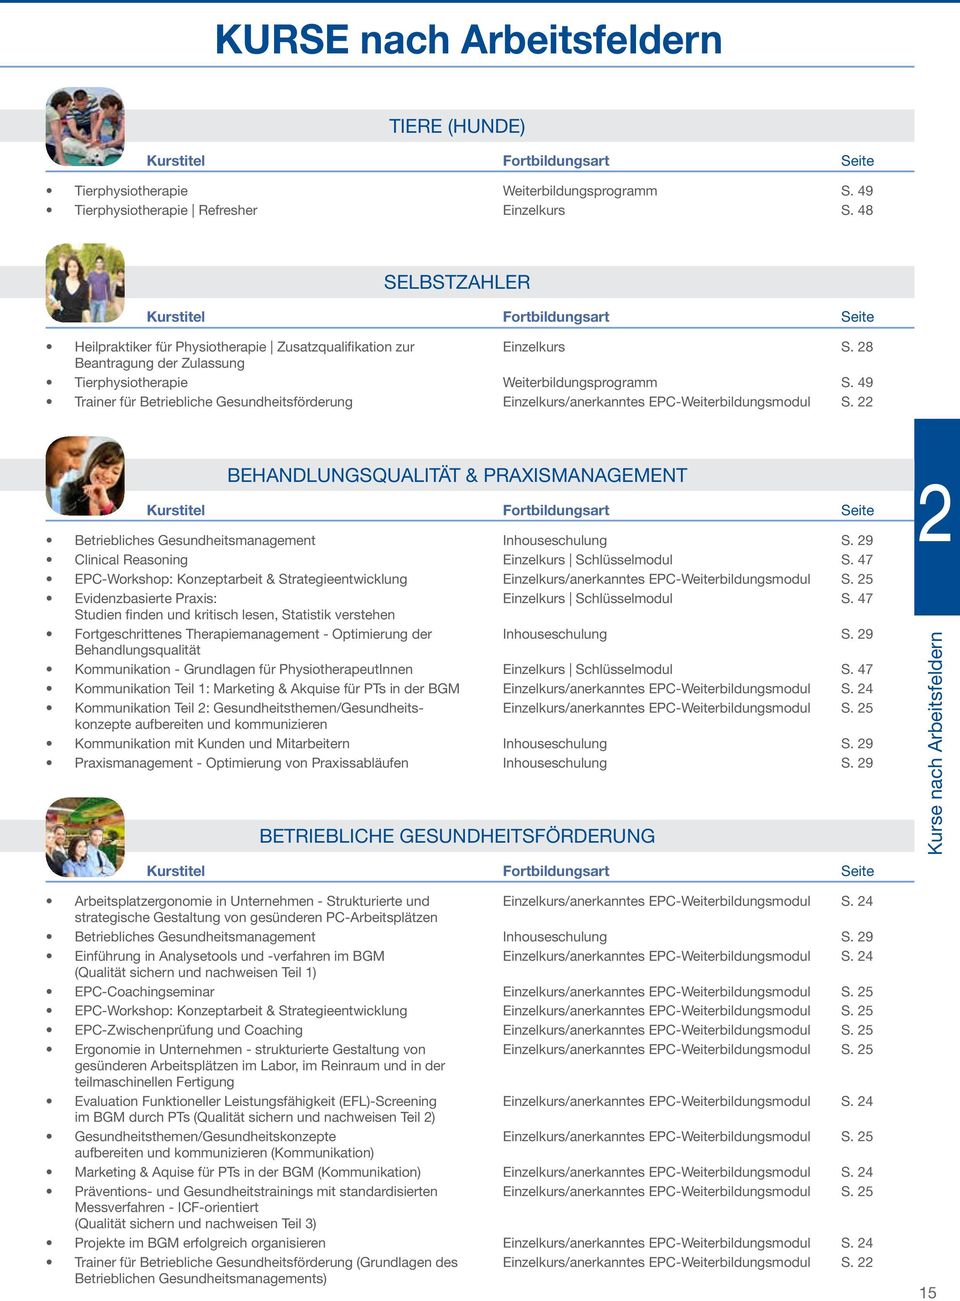 49 Trainer für Betriebliche Gesundheitsförderung Einzelkurs/anerkanntes EPC-Weiterbildungsmodul S.